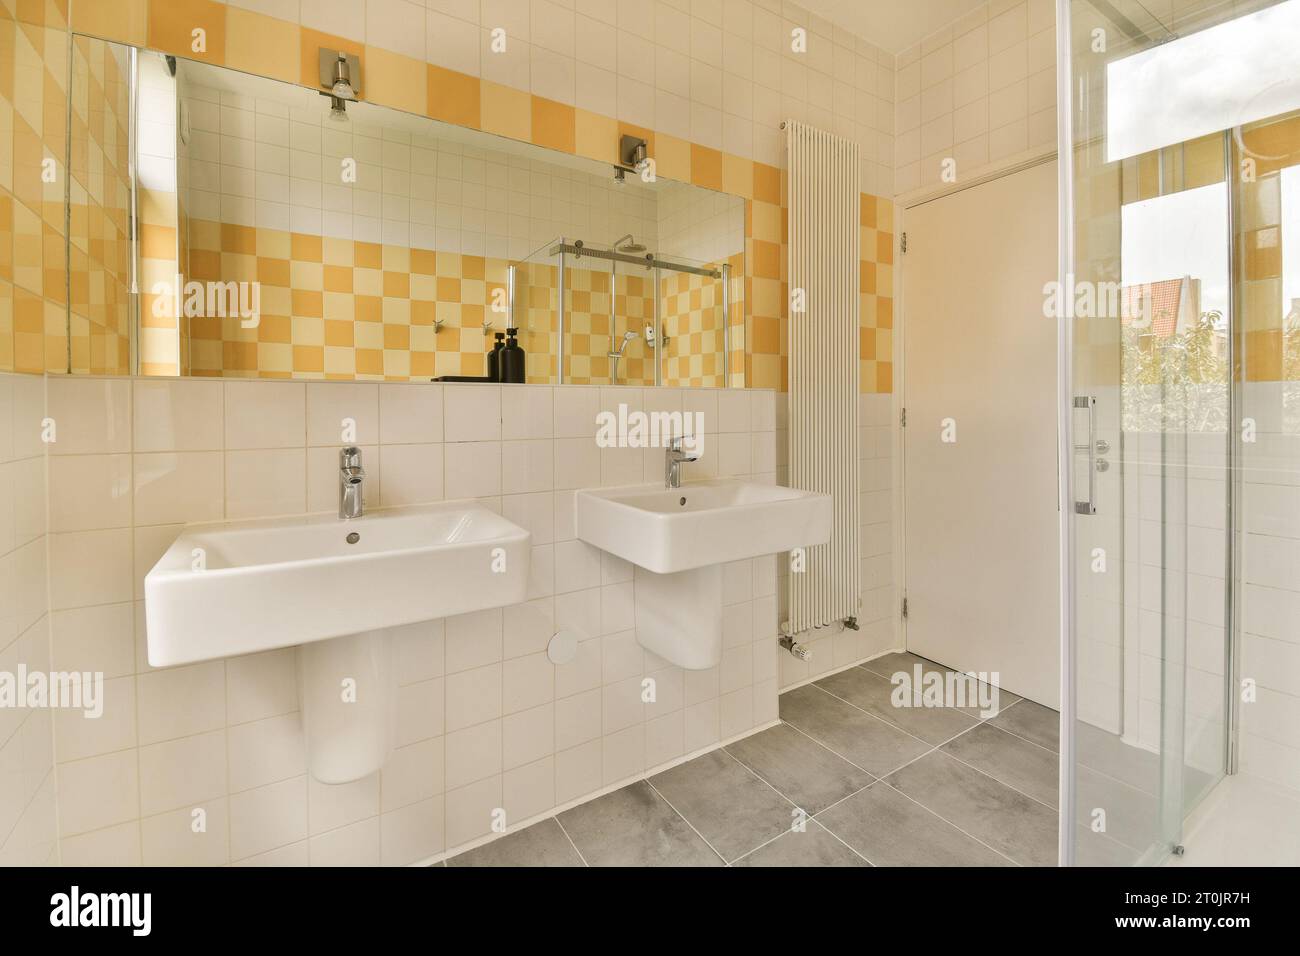 Ein Badezimmer mit gelben und weißen Fliesen an den Wänden, zwei Waschbecken und eine Duschkabine davor Stockfoto